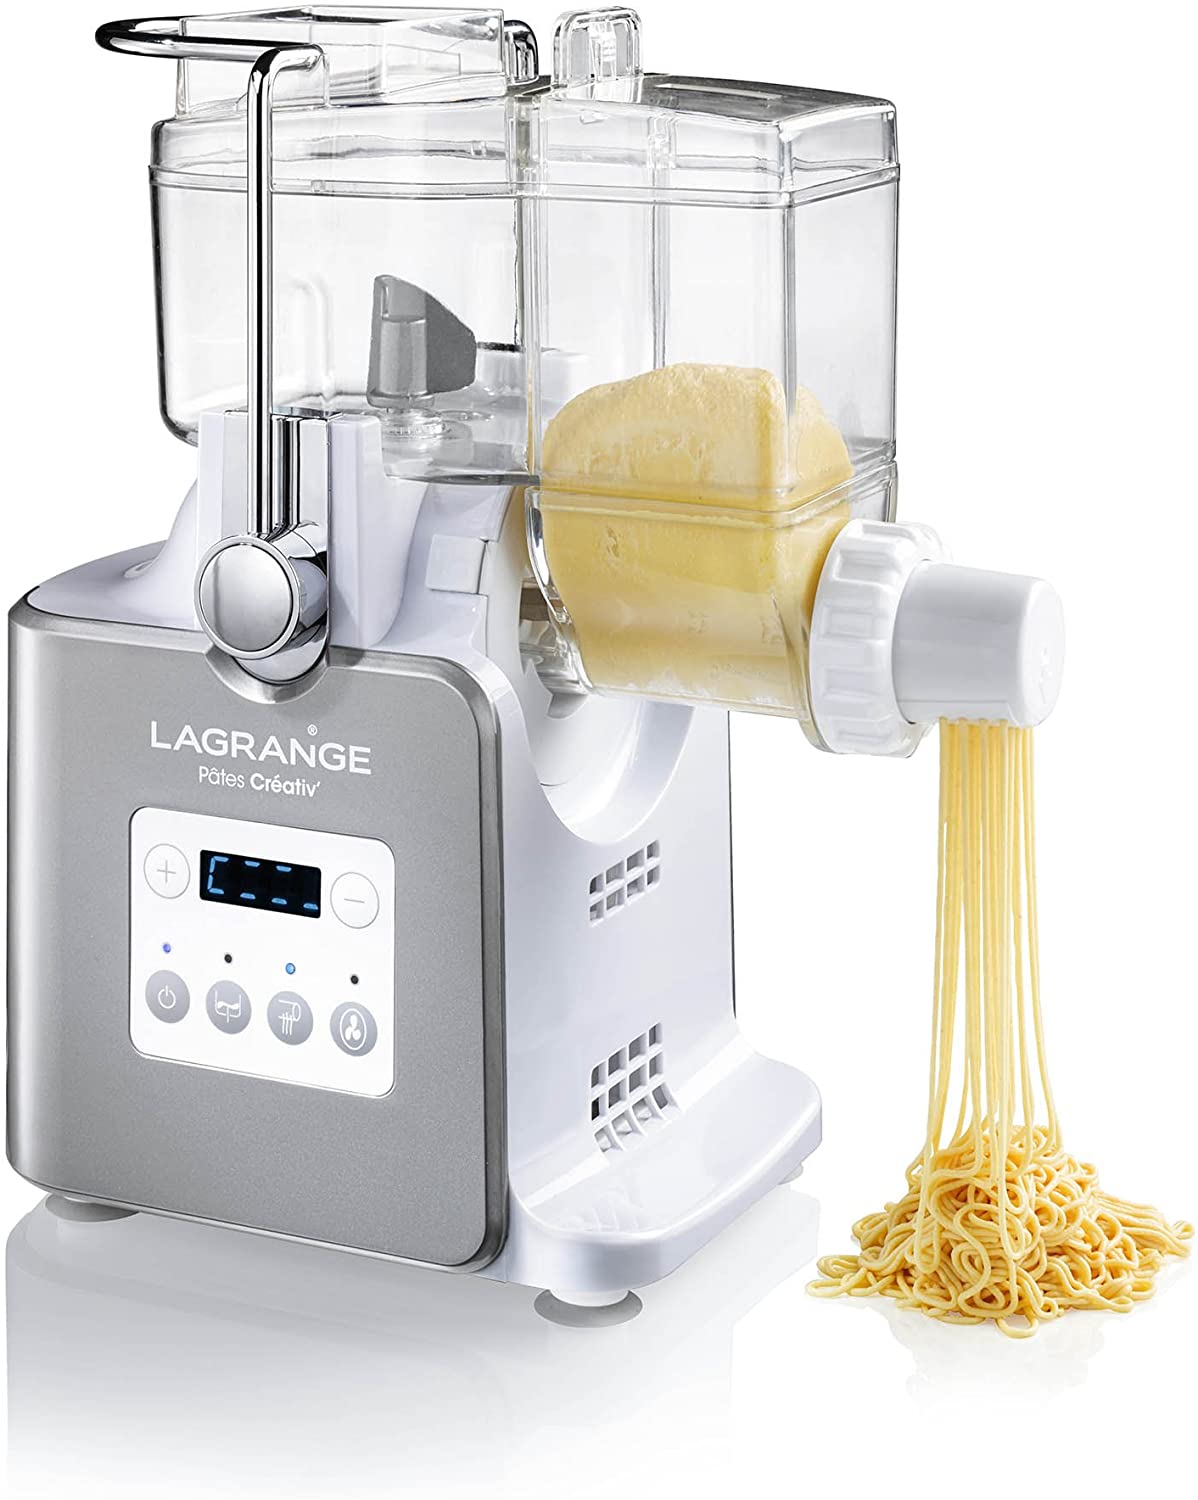 Lagrange 429002 creative pasta maker white 30 x 16 x 35 cm